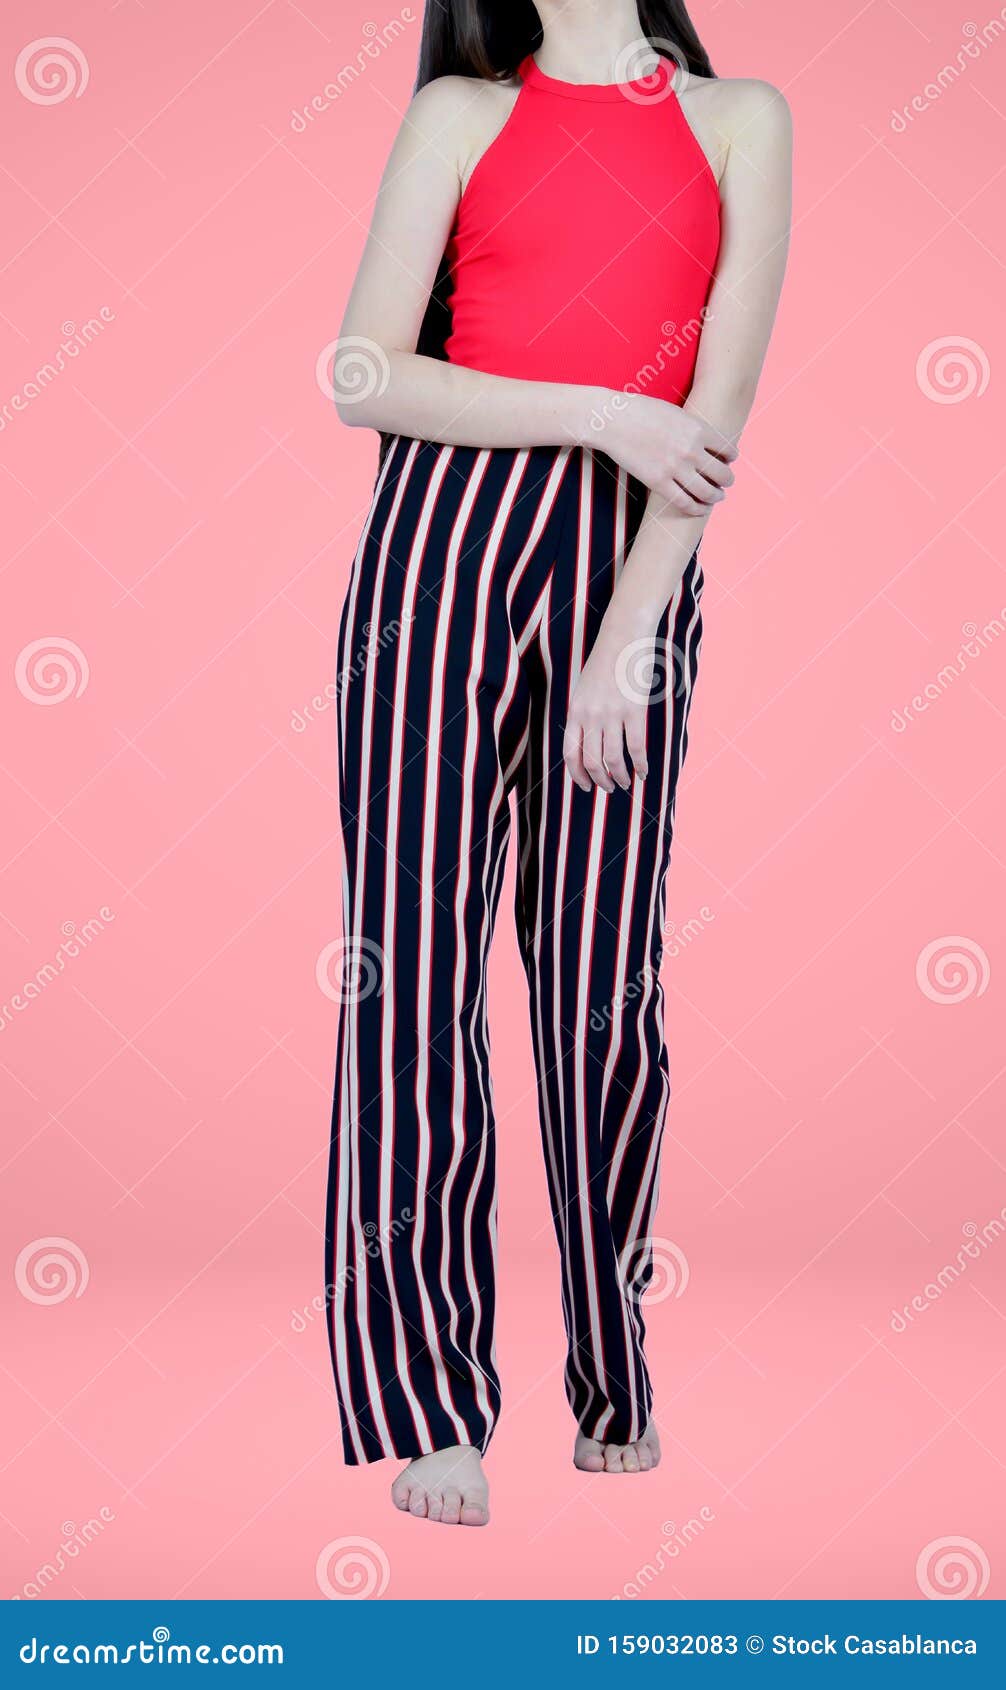 Hermosa Chica Con Pantalones De Rayas Negras En Con Camisa Roja Imagen de - lujo, alineada: 159032083